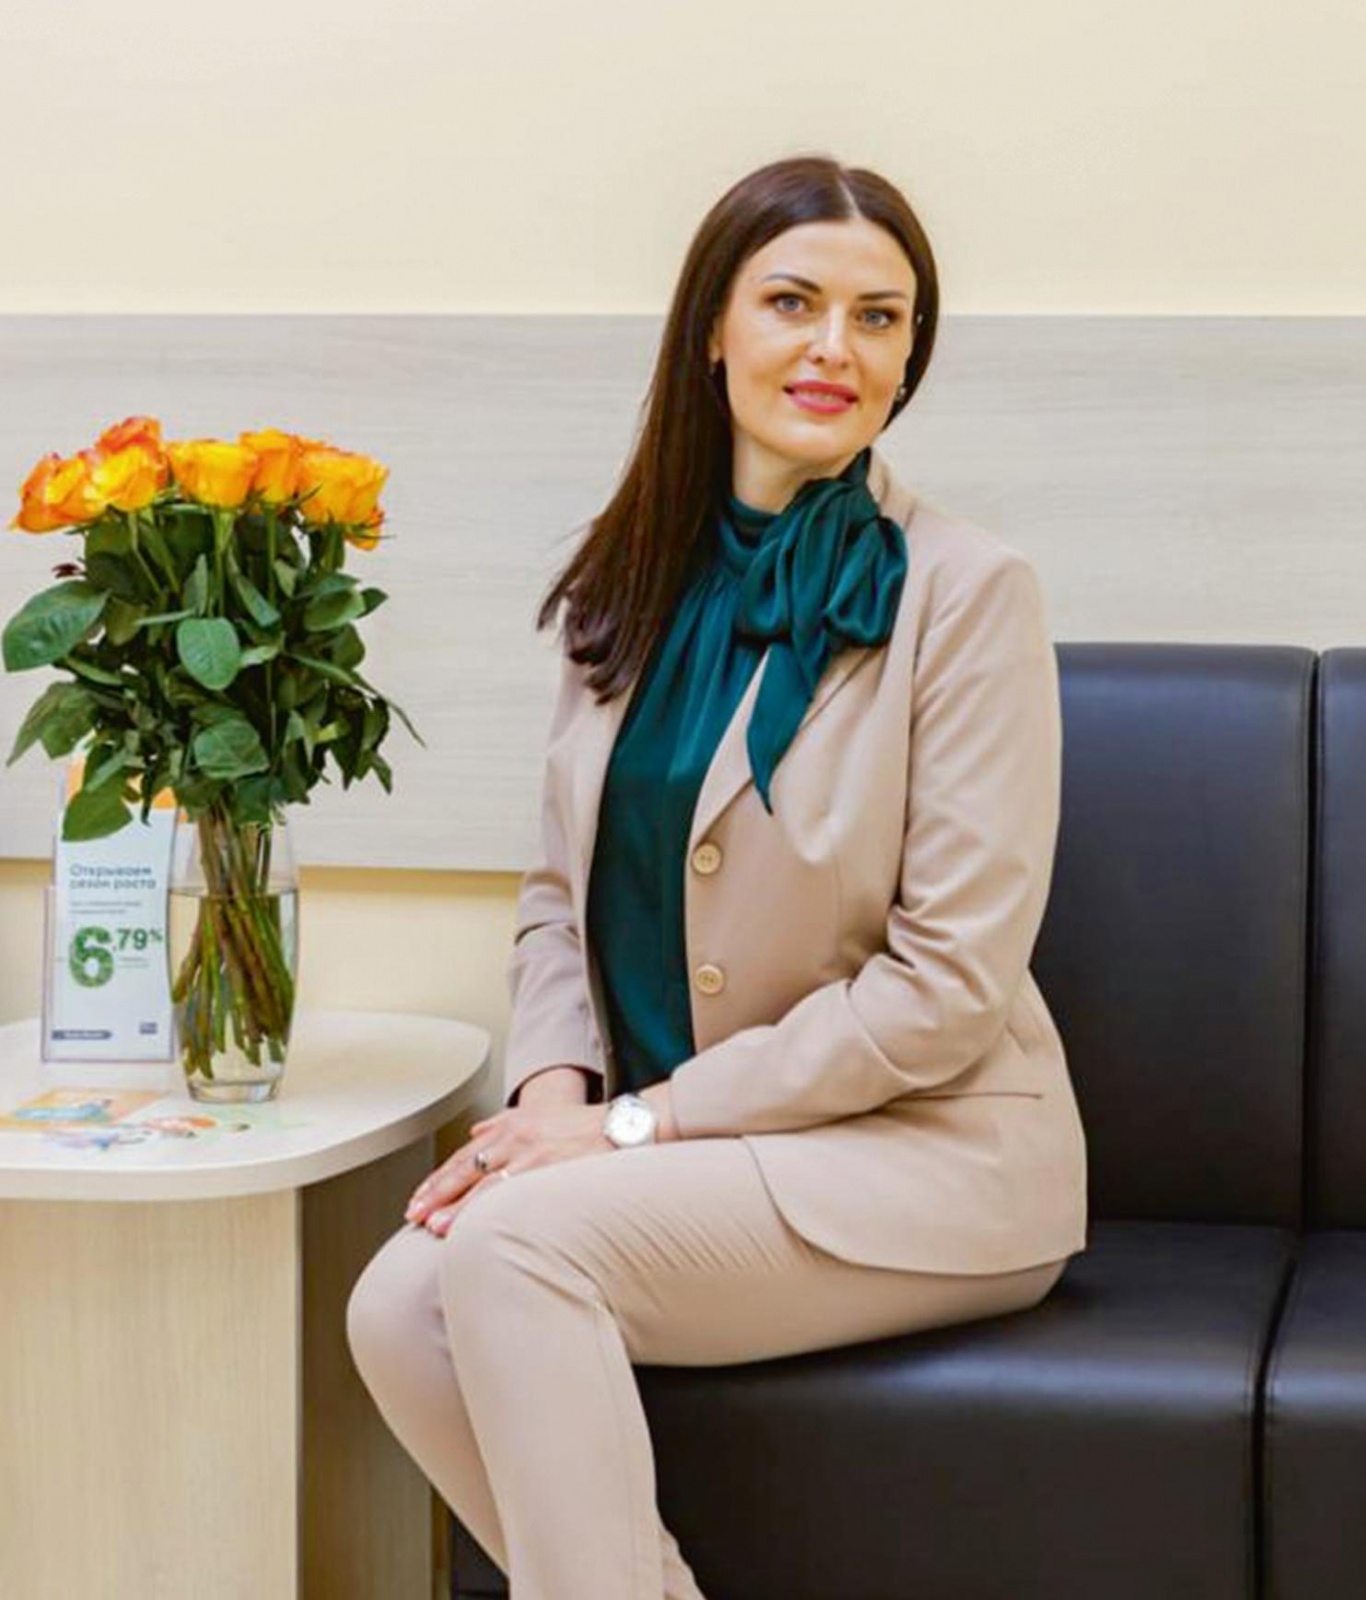 Управляющий «Экспобанка» в Брянске: Для нас важен высокий уровень доверия клиентов 